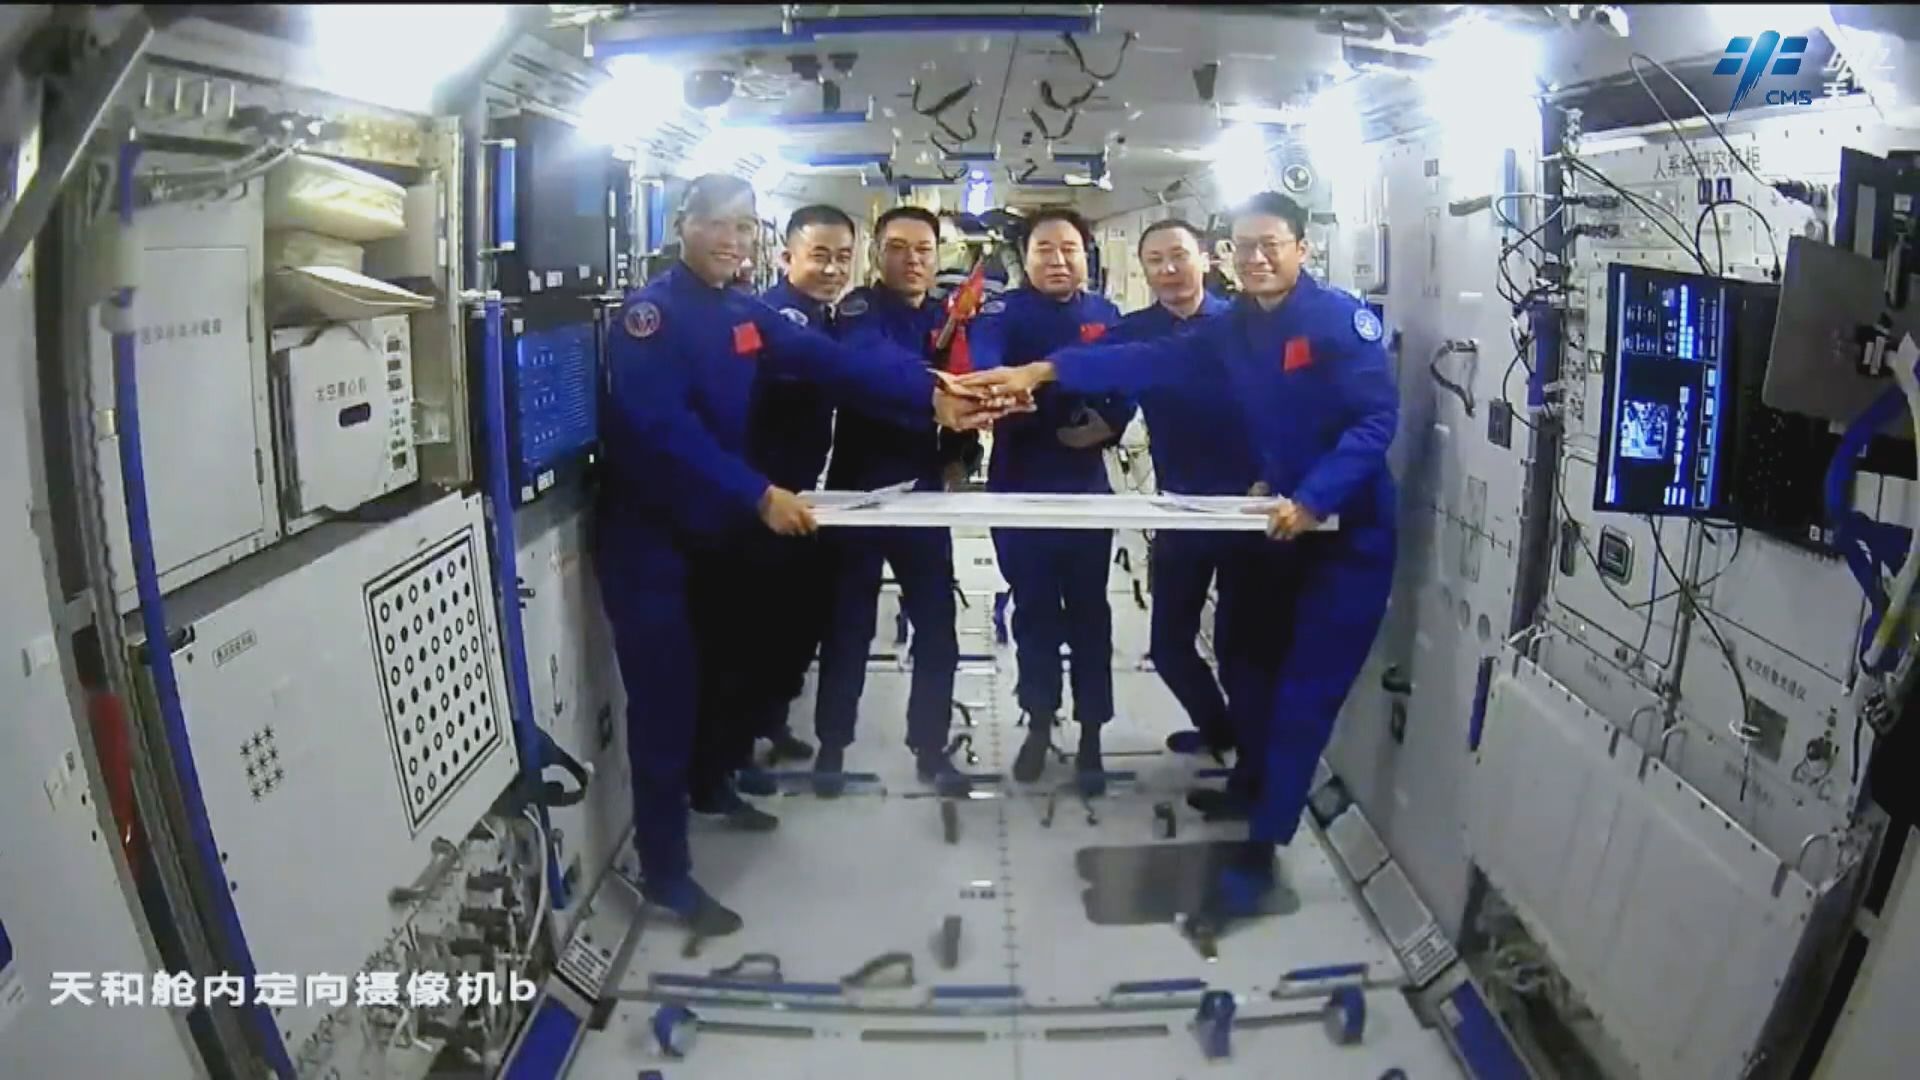 神舟十六號今晚將撤離中國太空站組合體